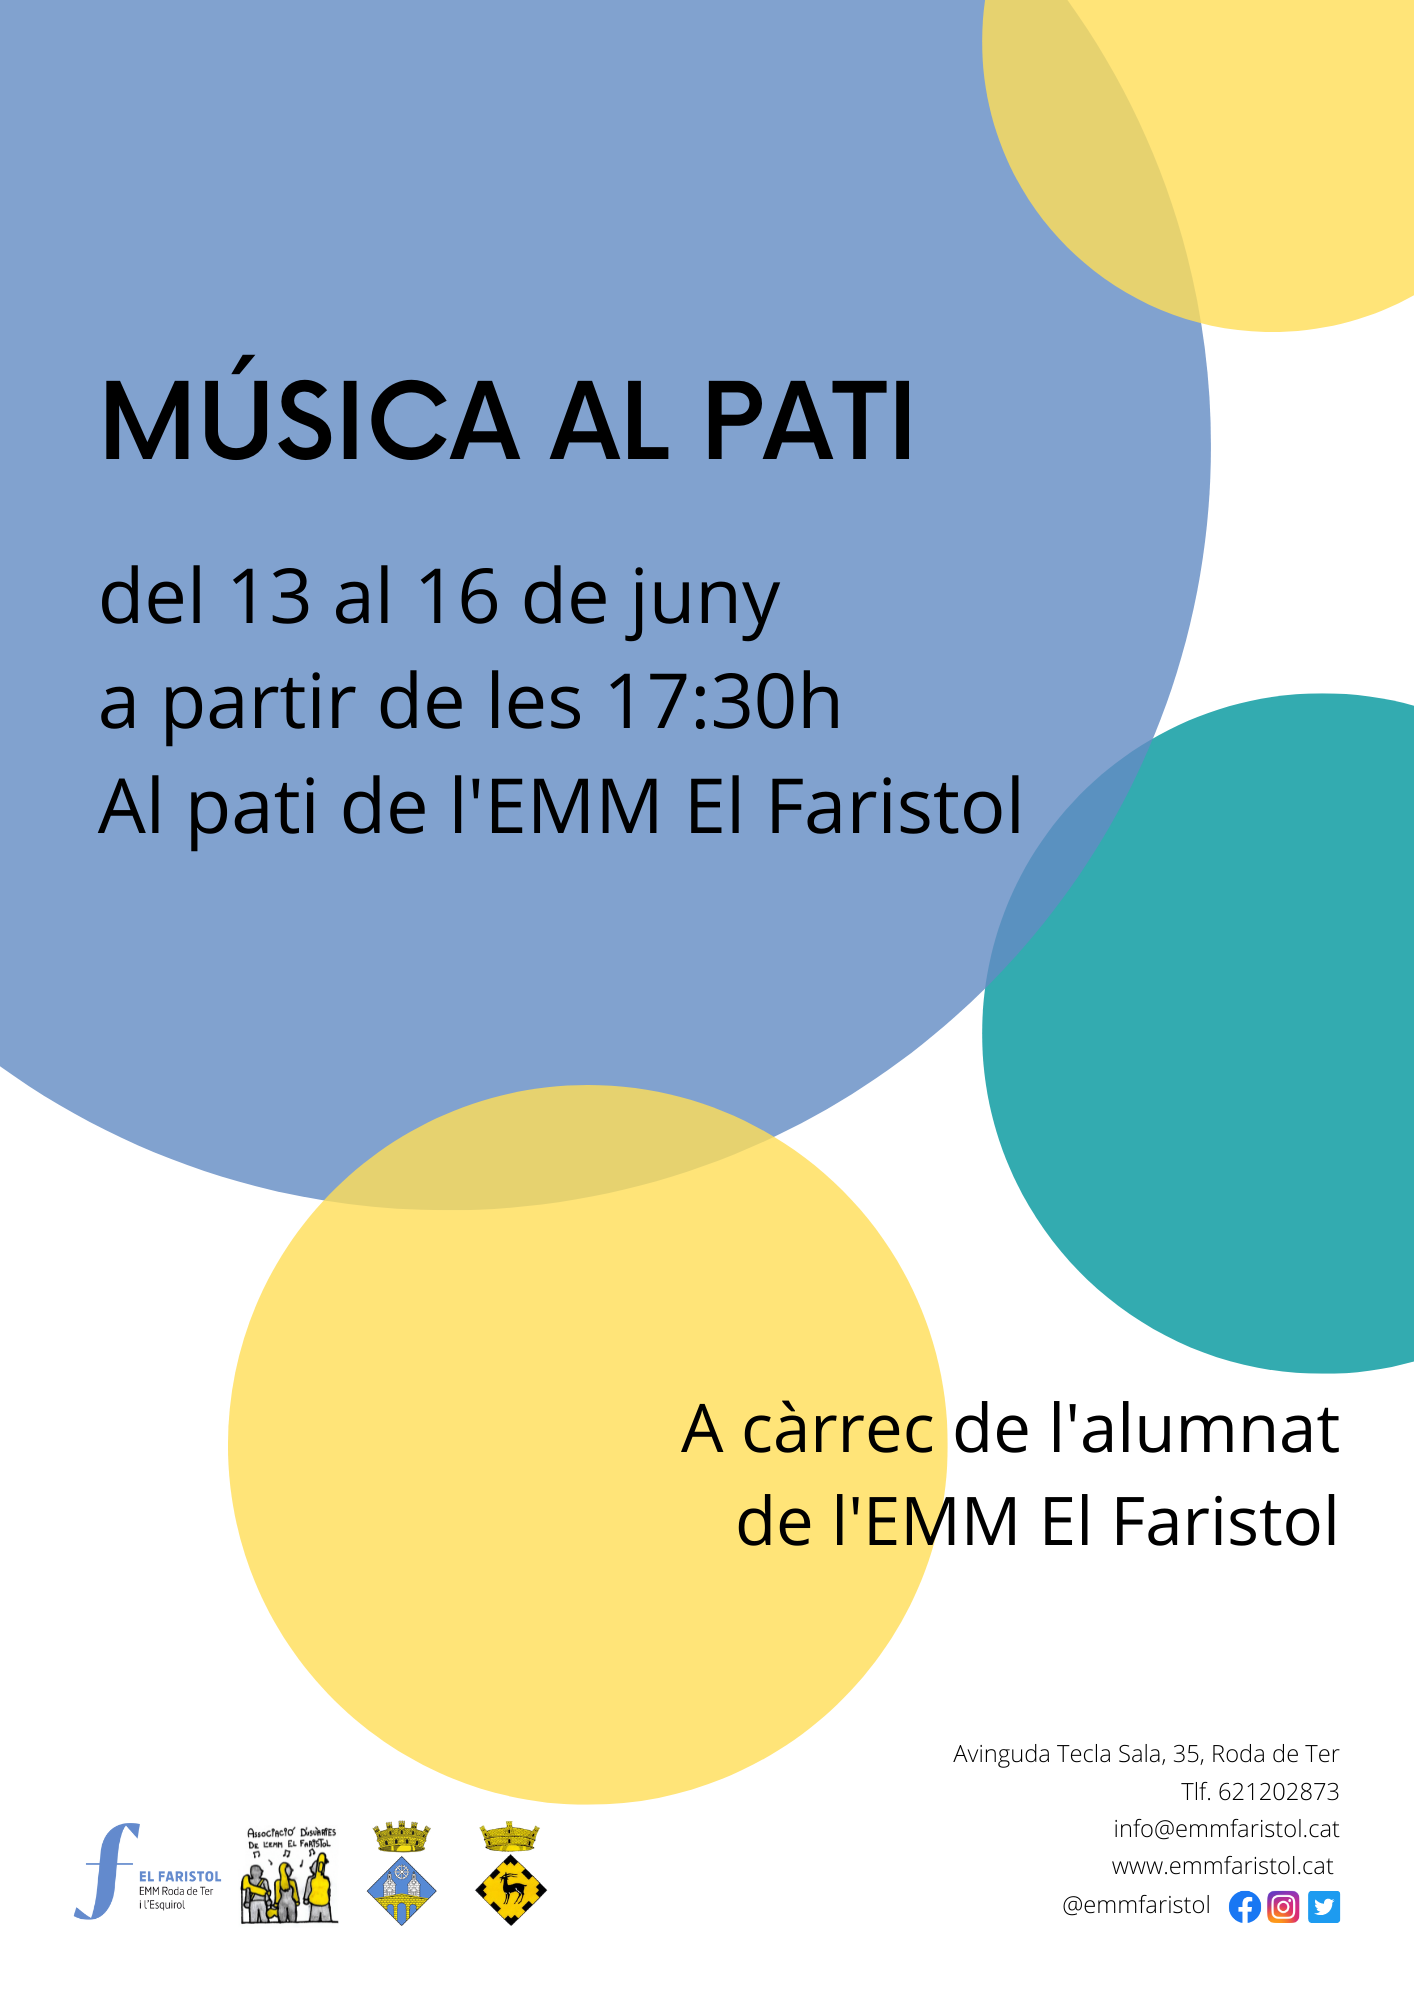 Concerts de l'alumnat de l'escola El Faristol